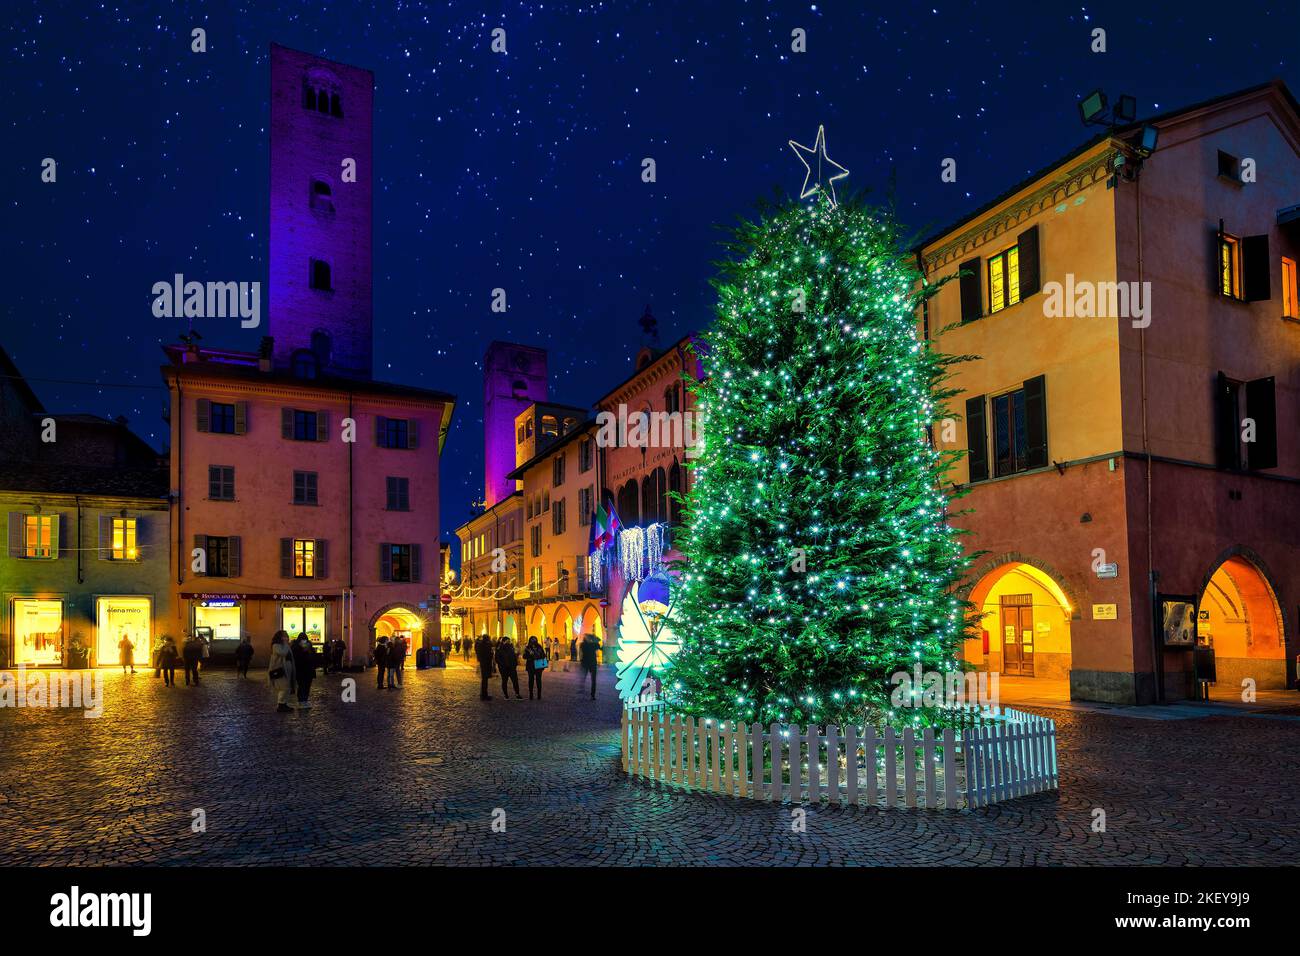 Menschen, die auf den beleuchteten Weihnachtsbaum auf dem Stadtplatz zwischen dem alten historischen Gebäude in Alba, Italien, schauen. Stockfoto